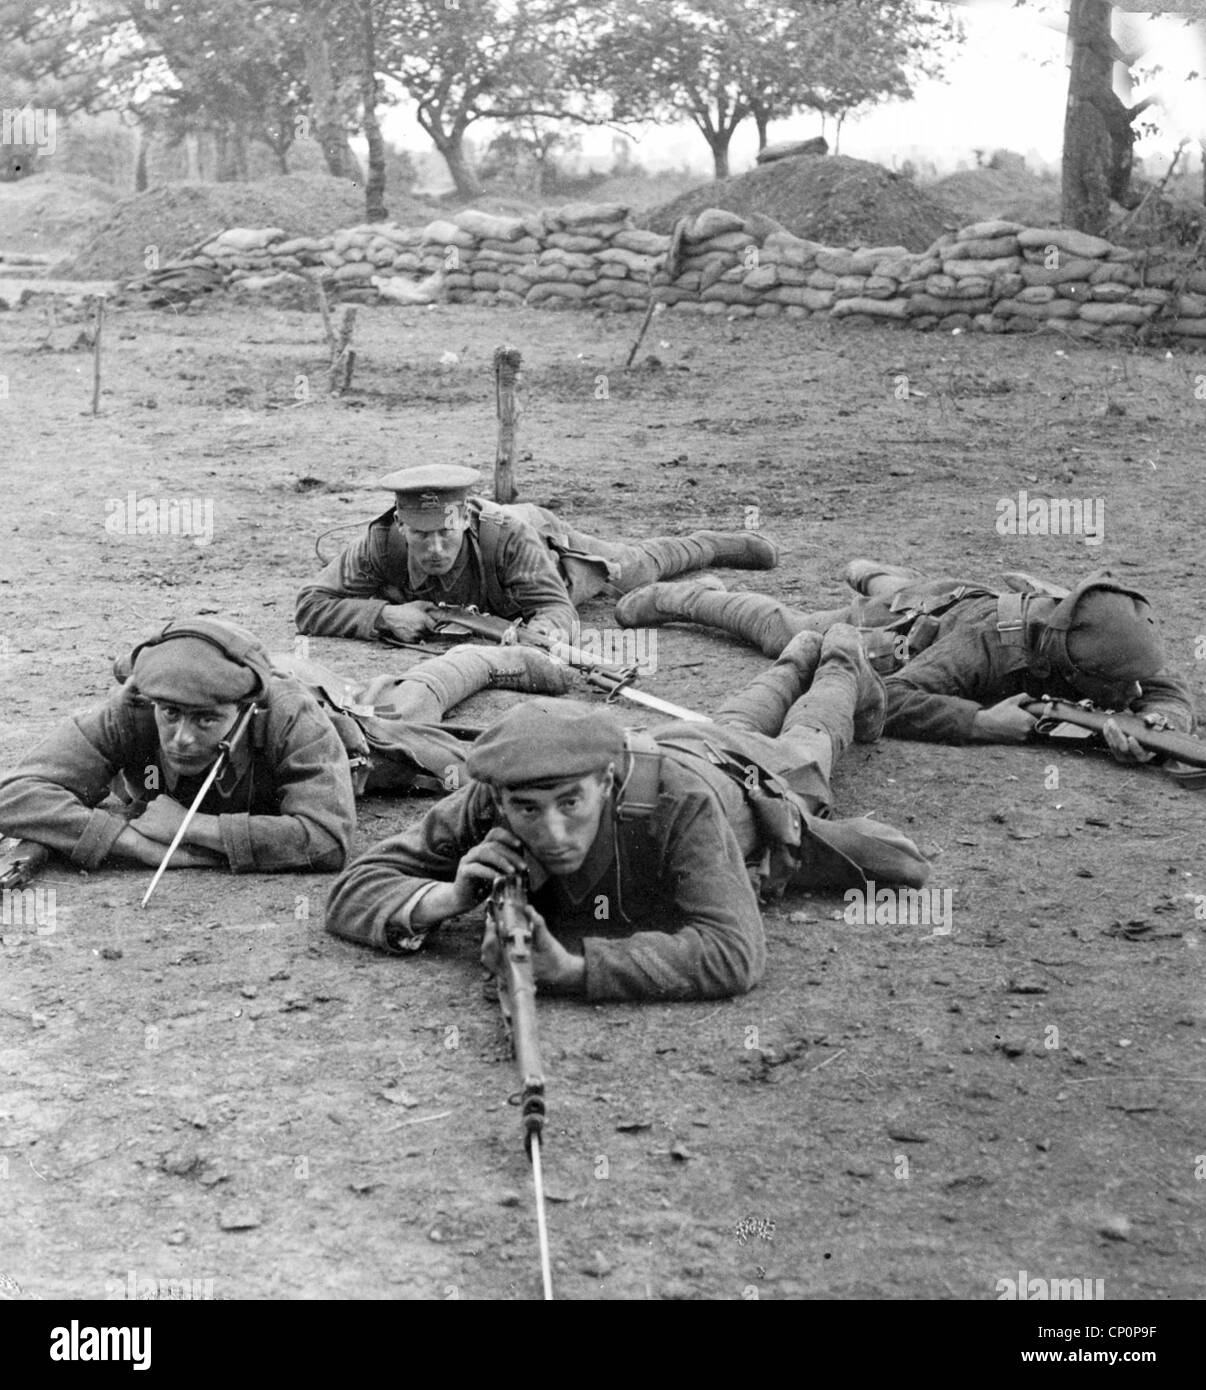 Quatre soldats avec des fusils étendue sur le sol, pendant la Première Guerre mondiale Banque D'Images